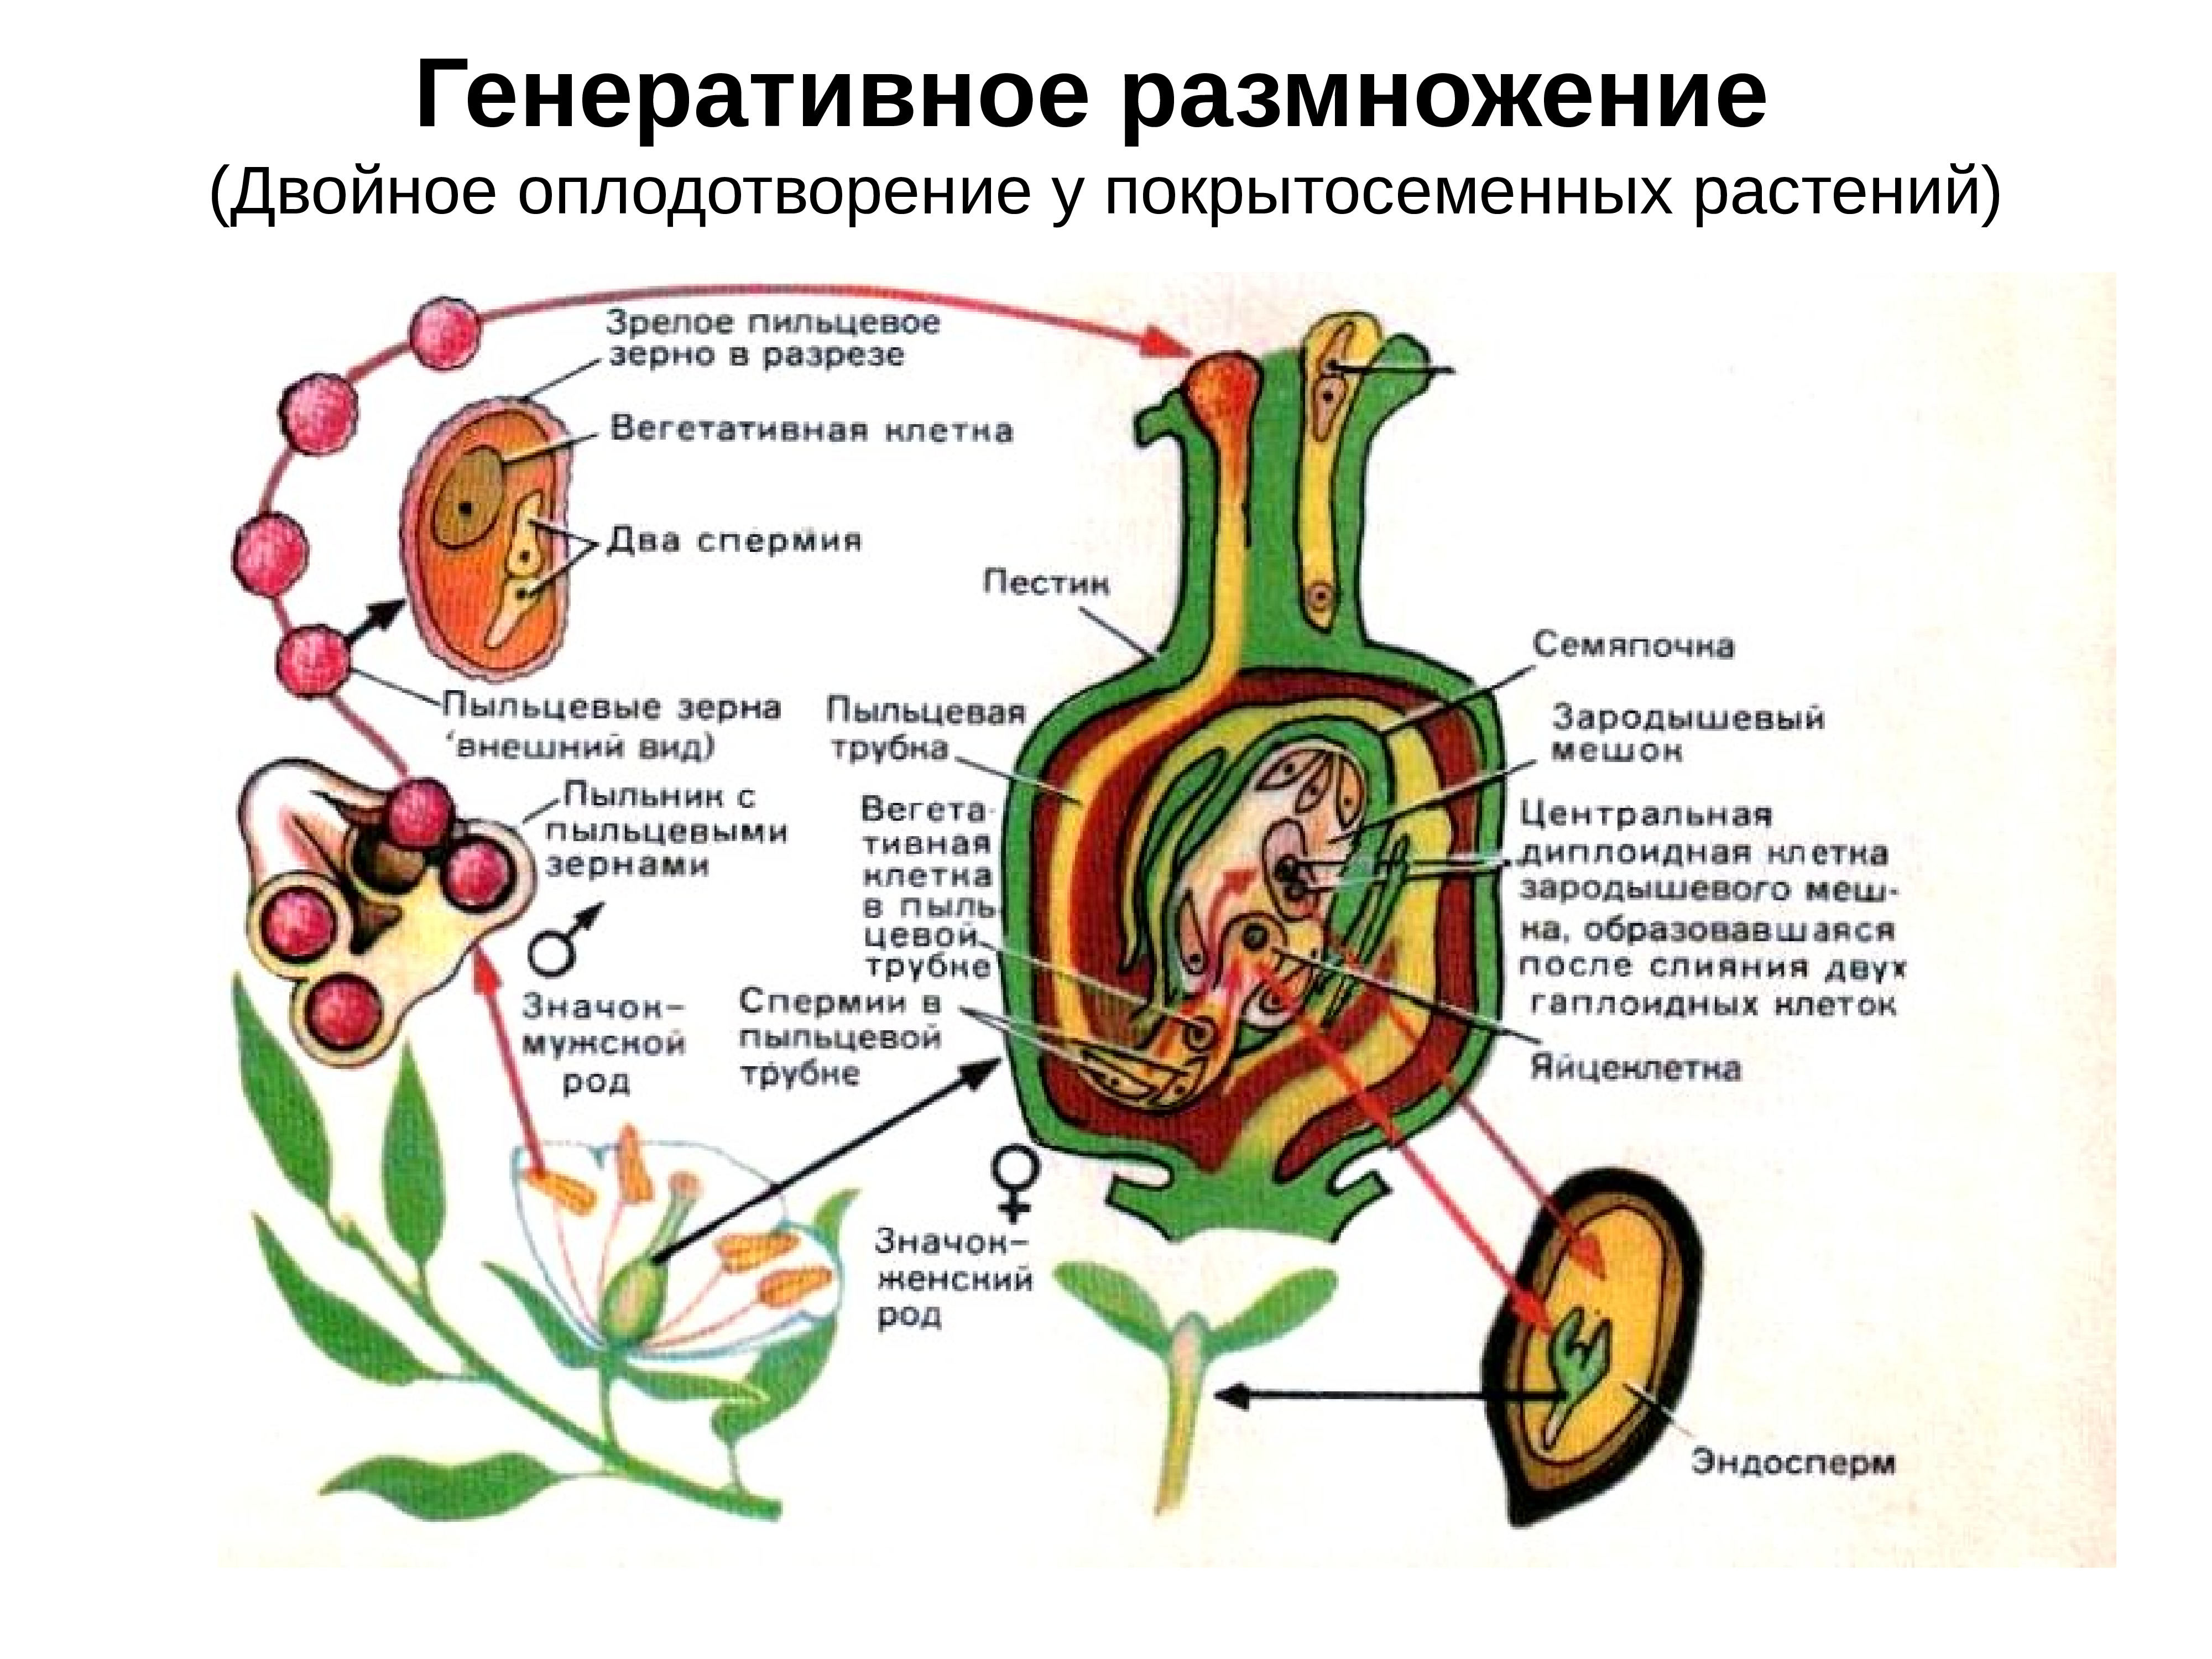 Схема двойного оплодотворения у покрытосеменных растений